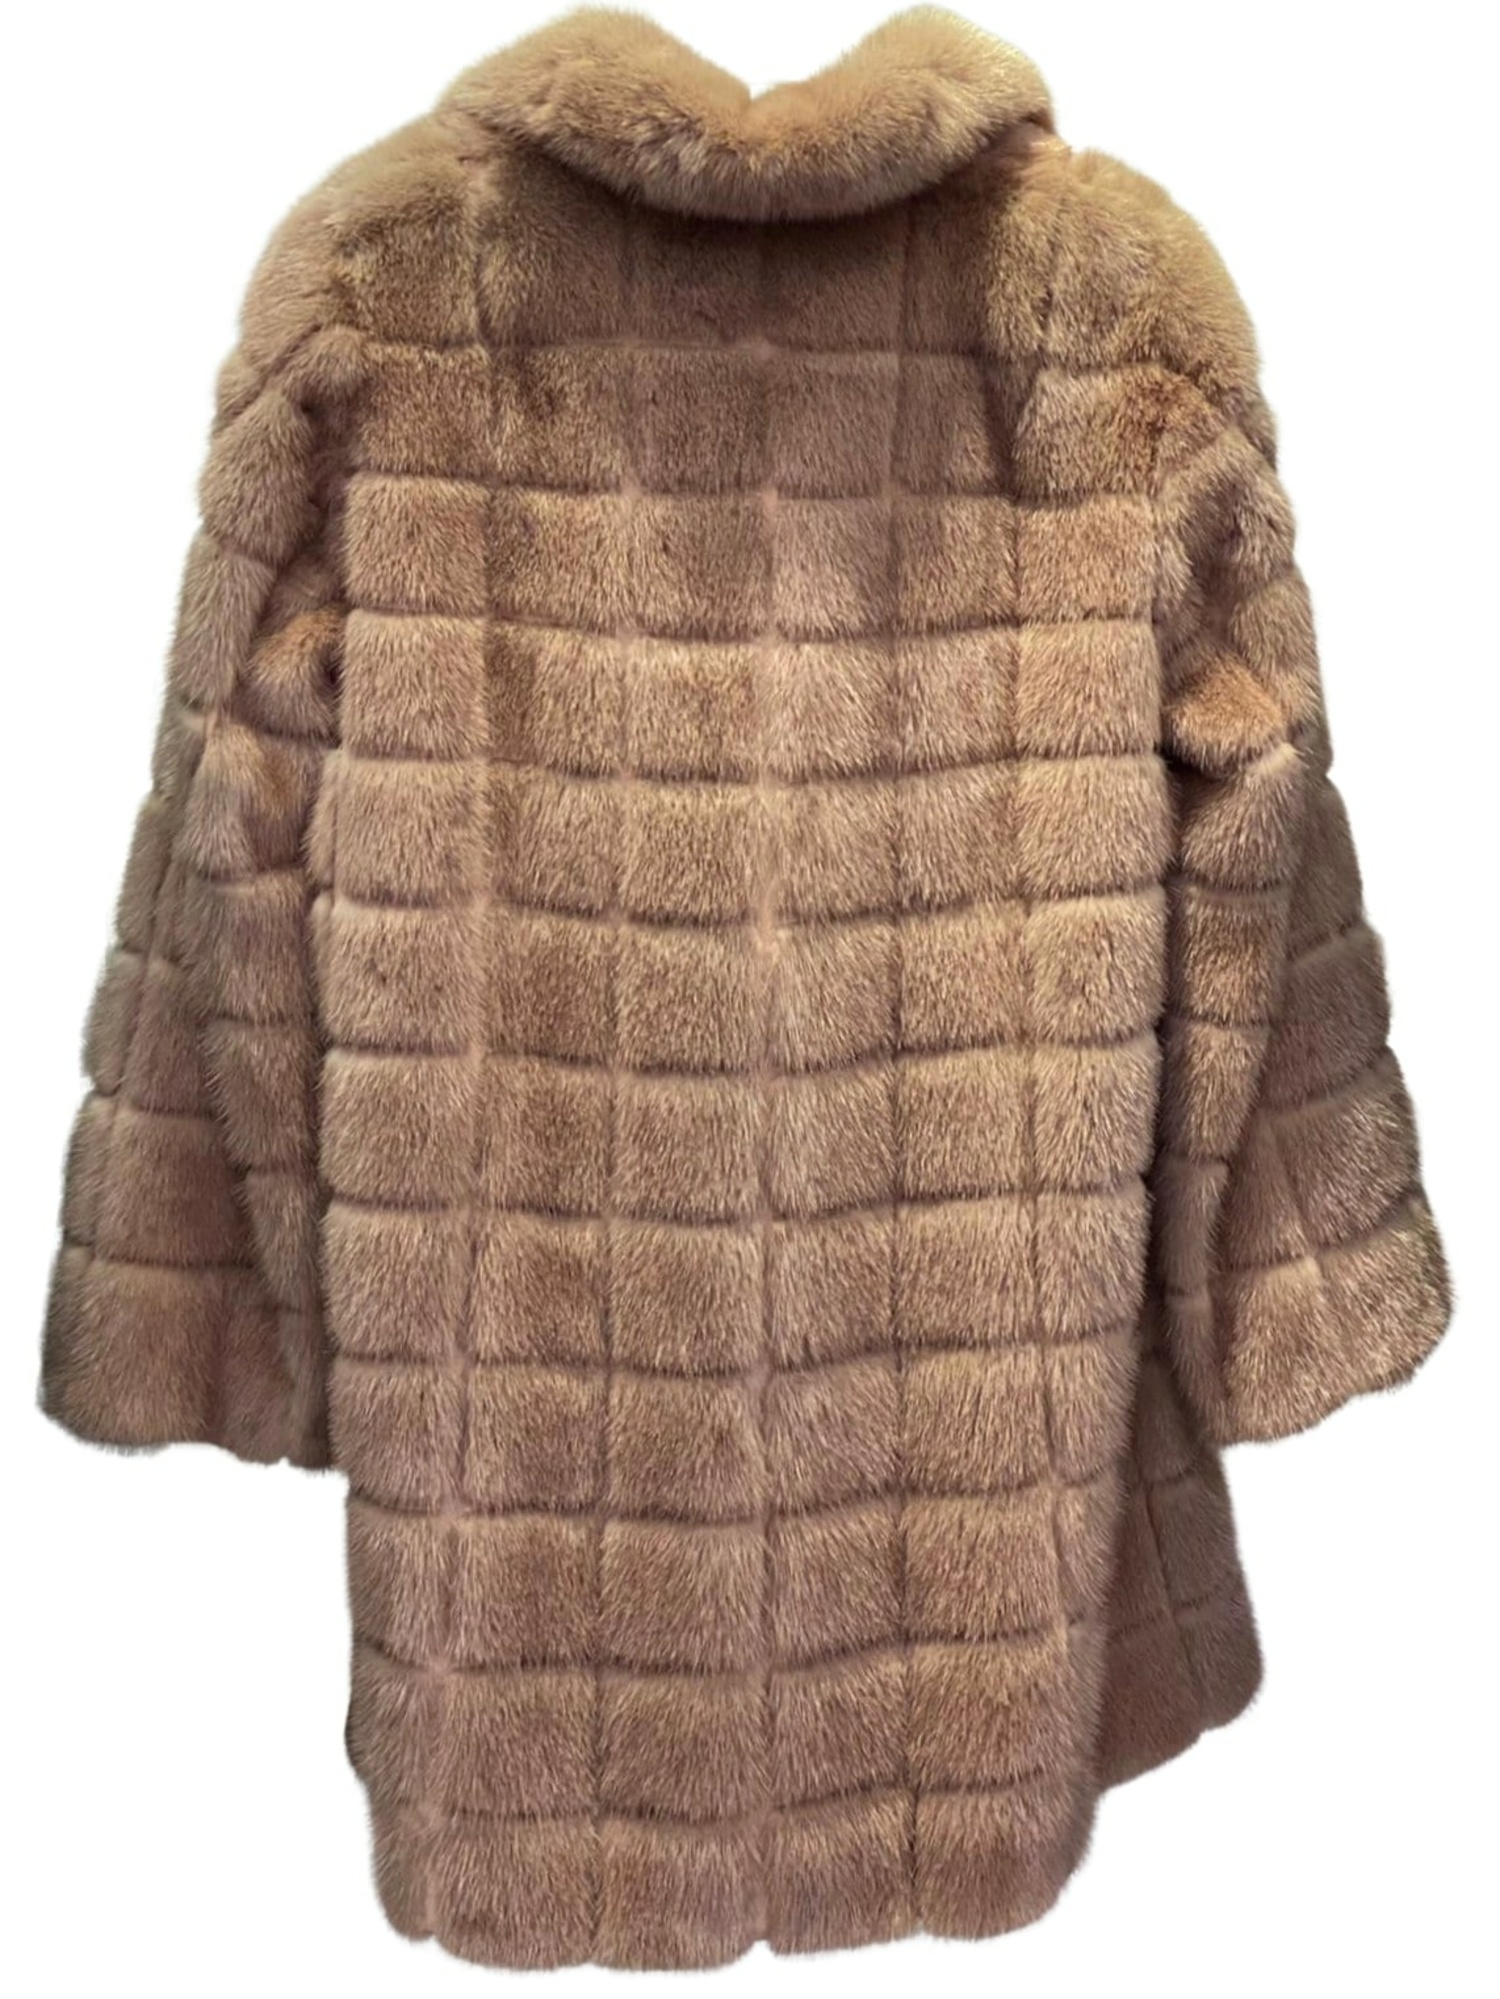 Mink fur hoodie Antonio Arnesano - IT 42, buy pre-owned at 1185 EUR